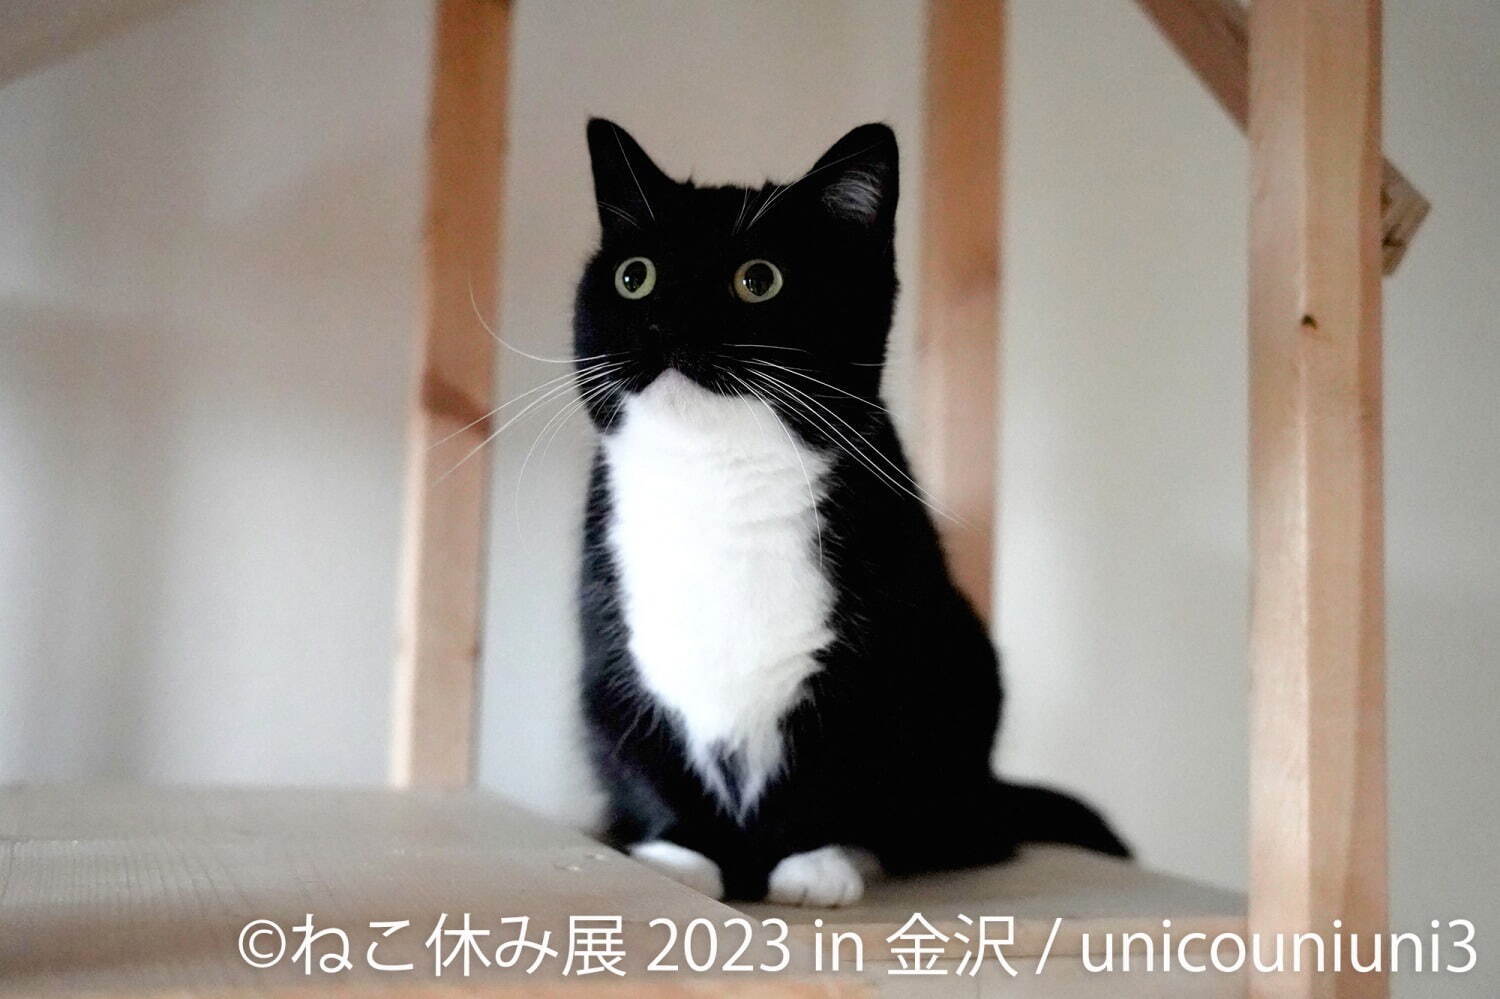 ねこの合同写真展「ねこ休み展 2023」金沢で、“スター猫”の作品200点